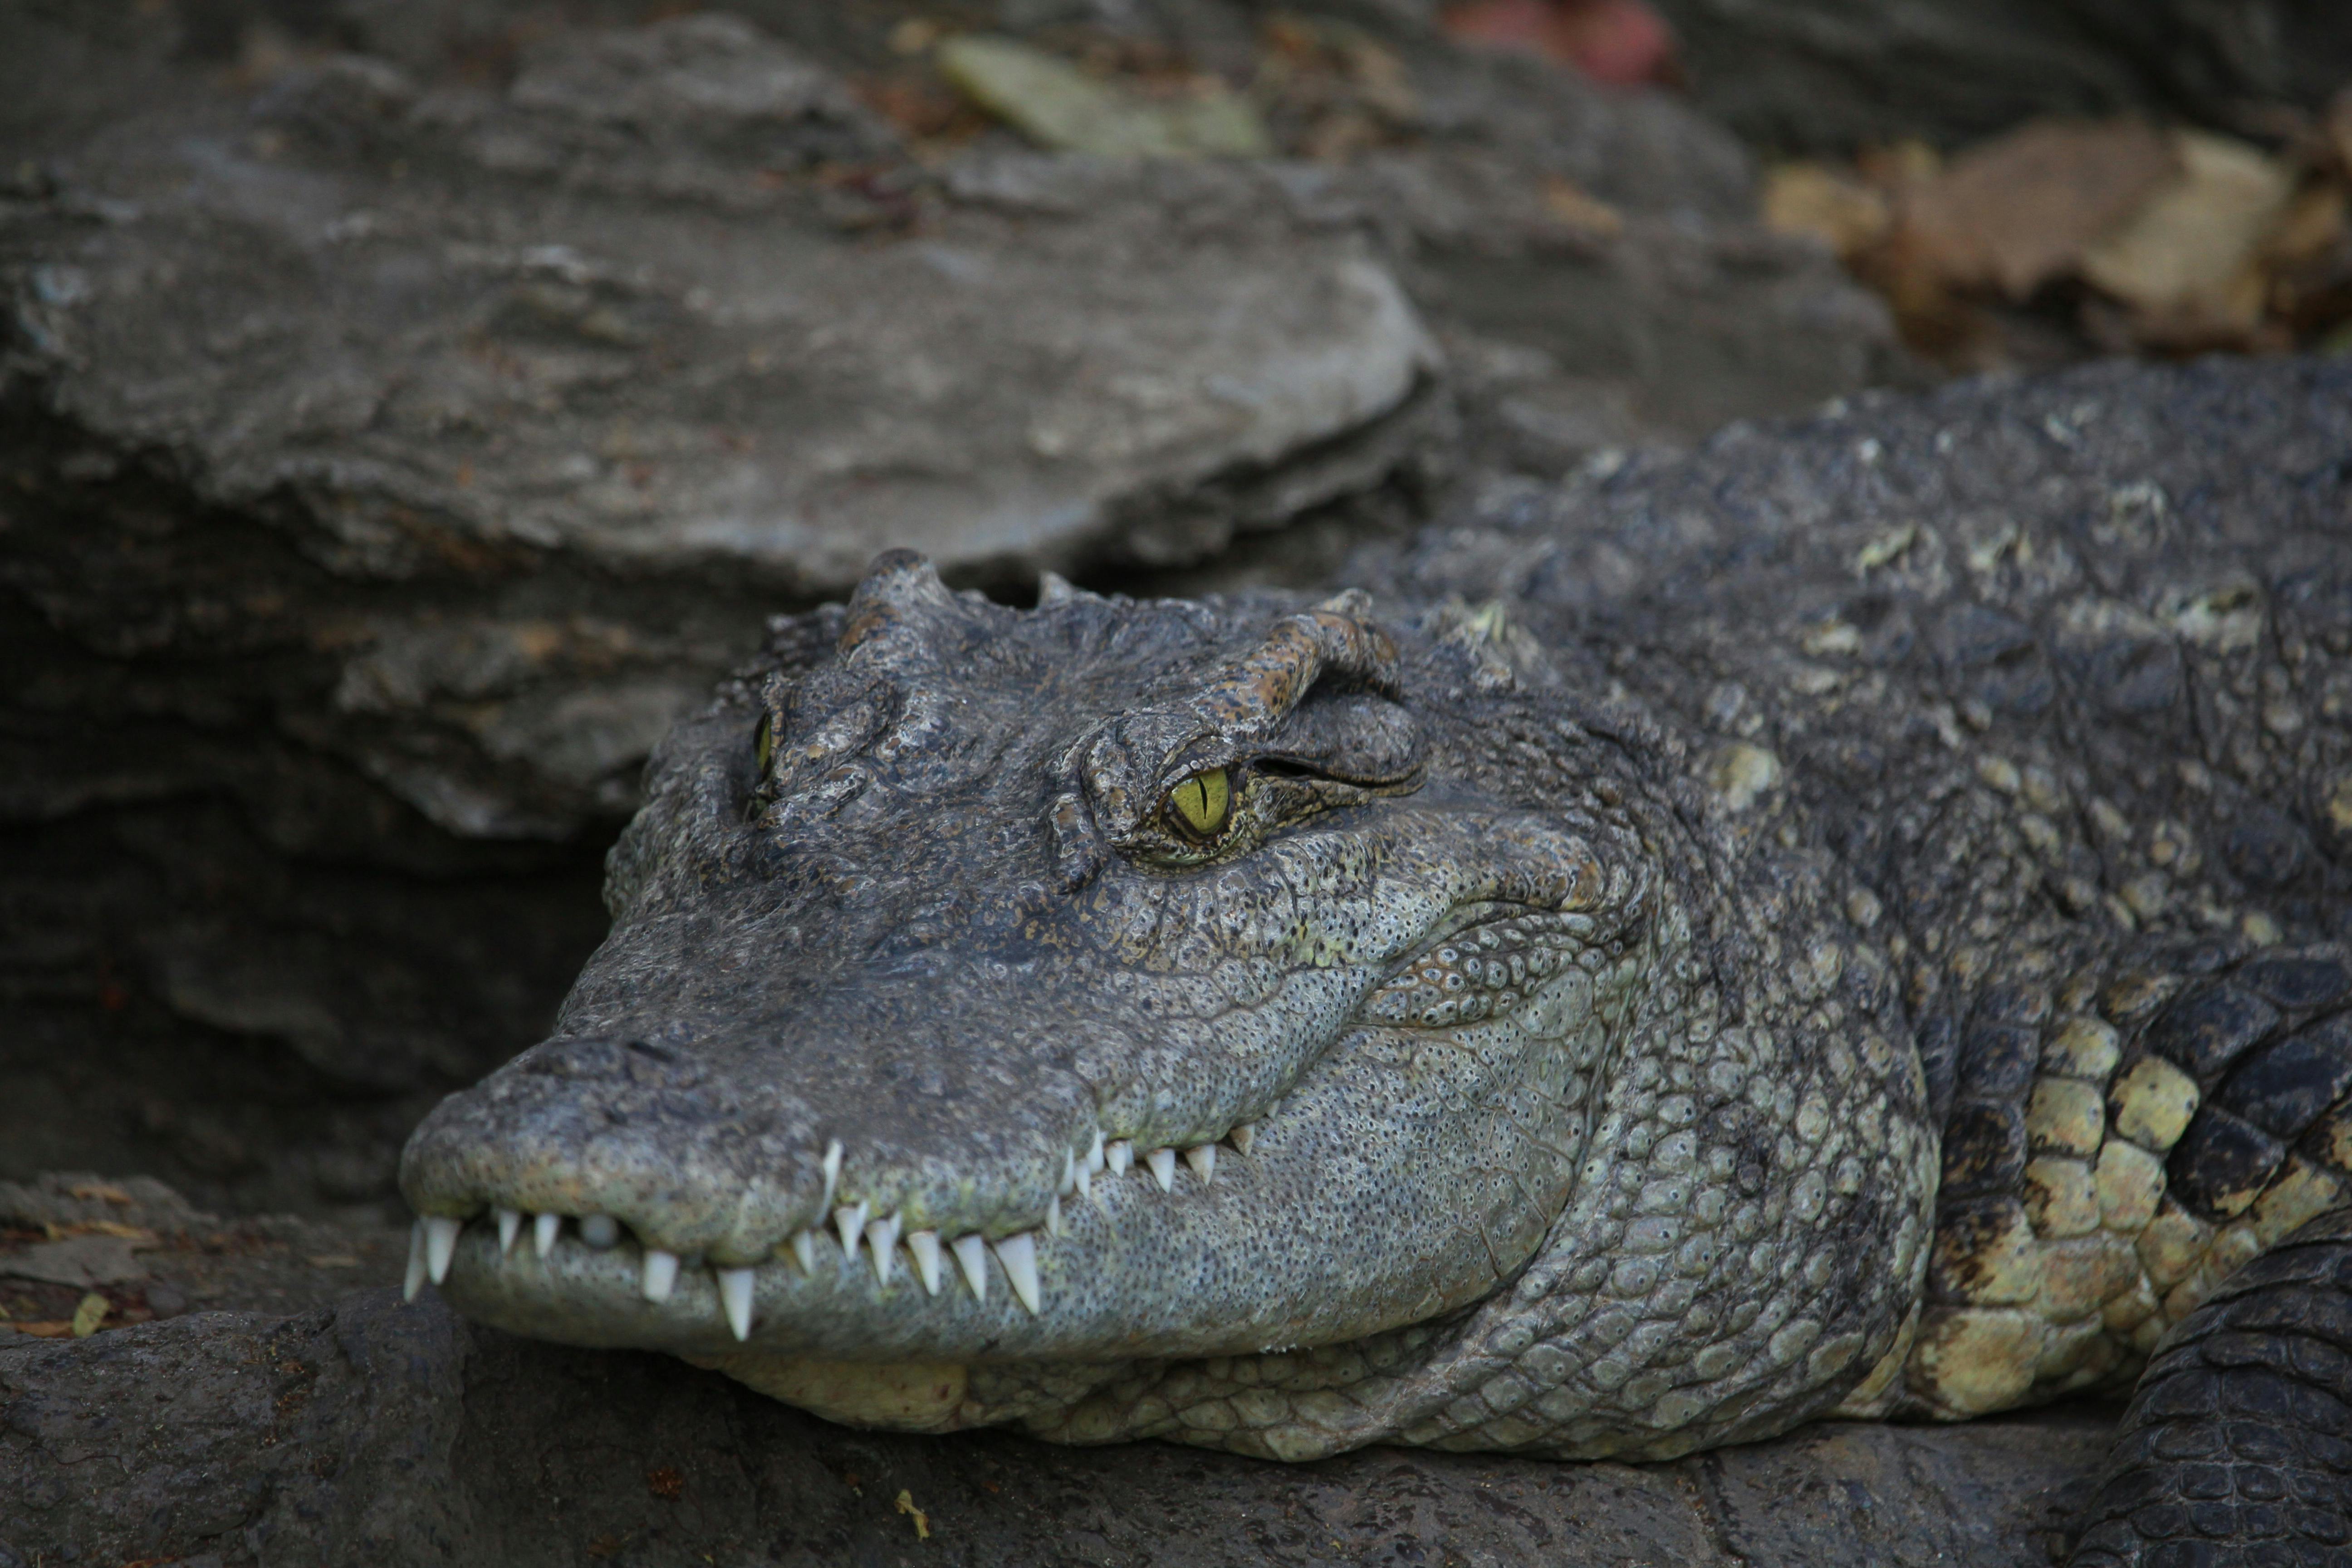 Hình ảnh đáng sợ về cá sấu 70kg bắt được ở HN